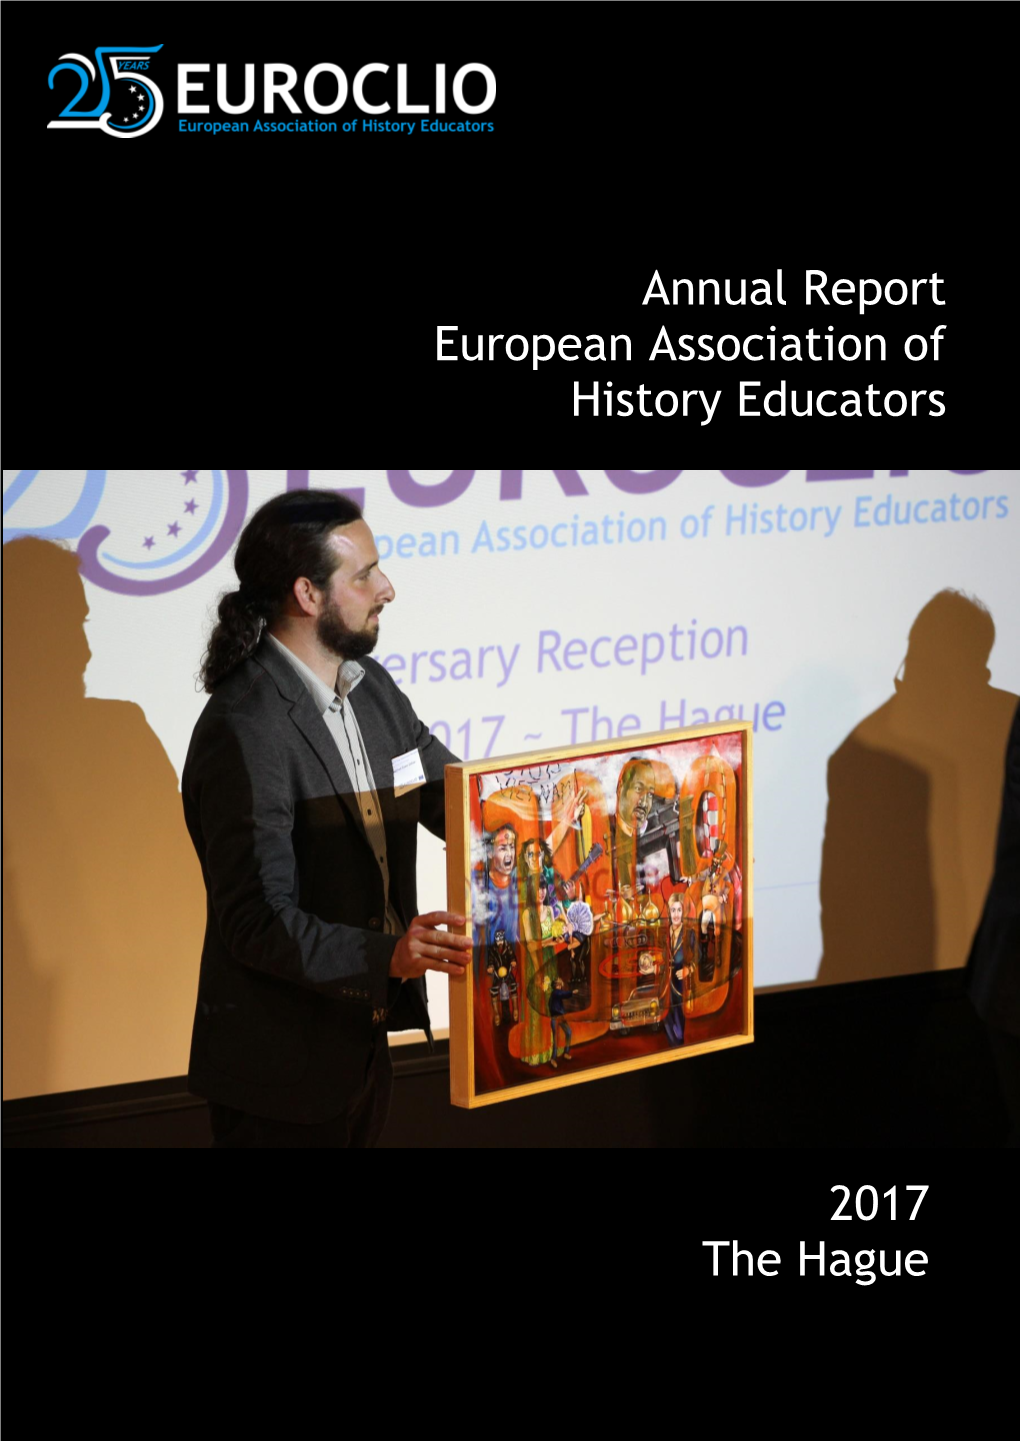 EUROCLIO Annual Report 2017